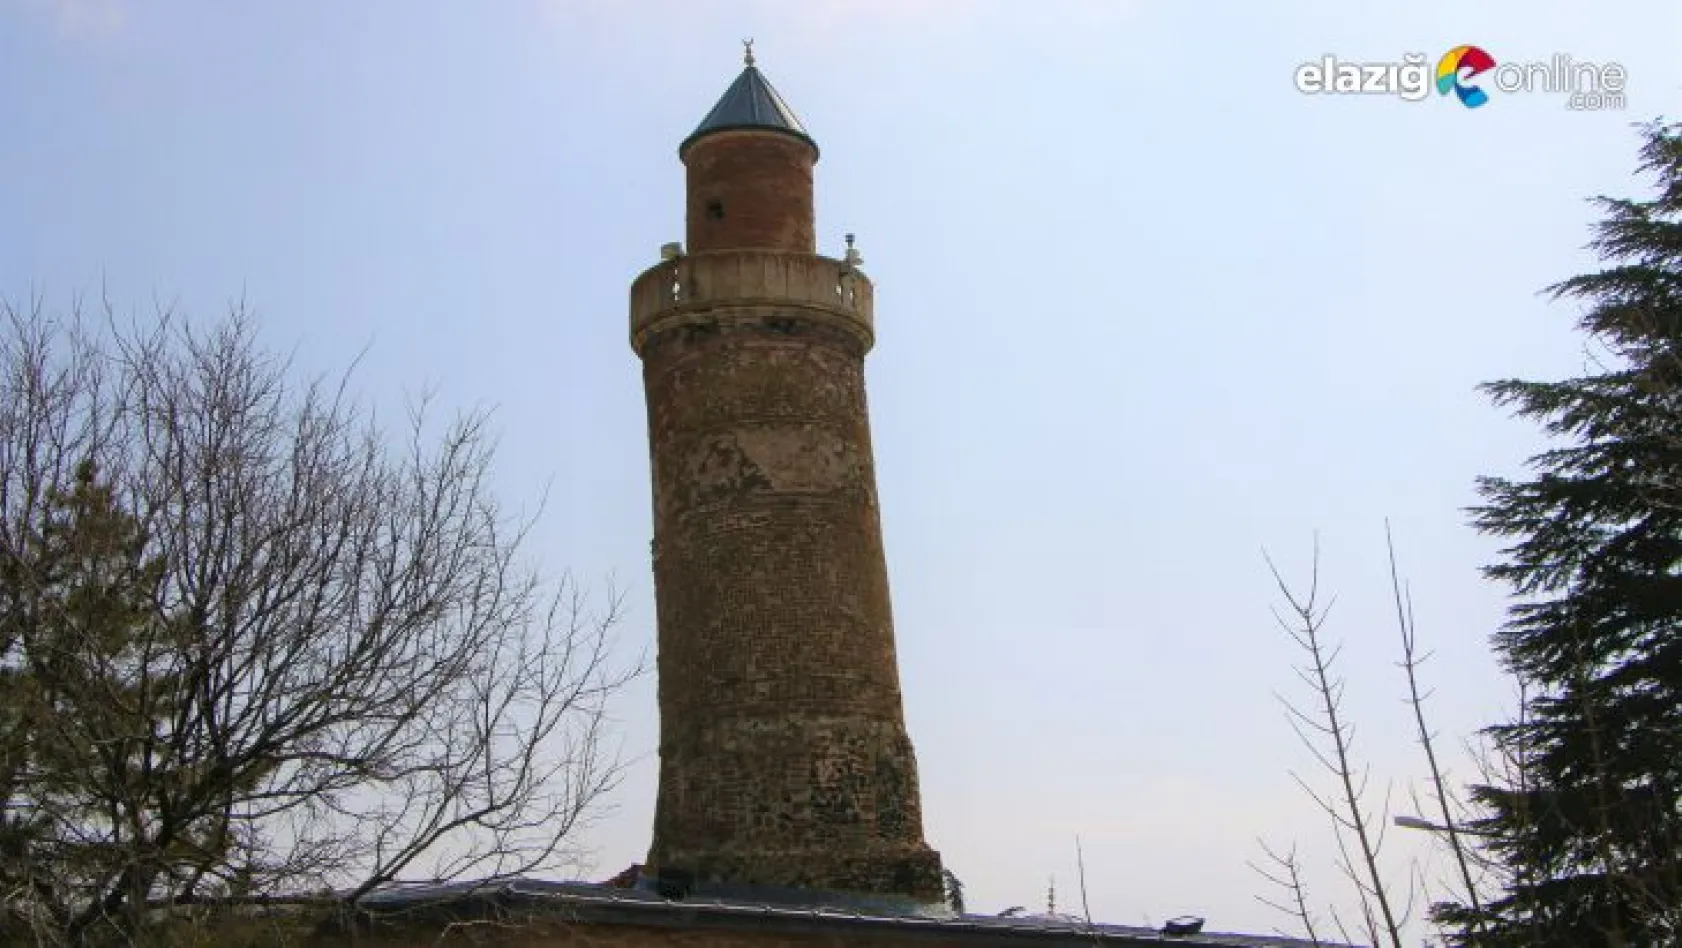 Eğri Minareli Cami turistlerin gözdesi olmaya devam ediyor